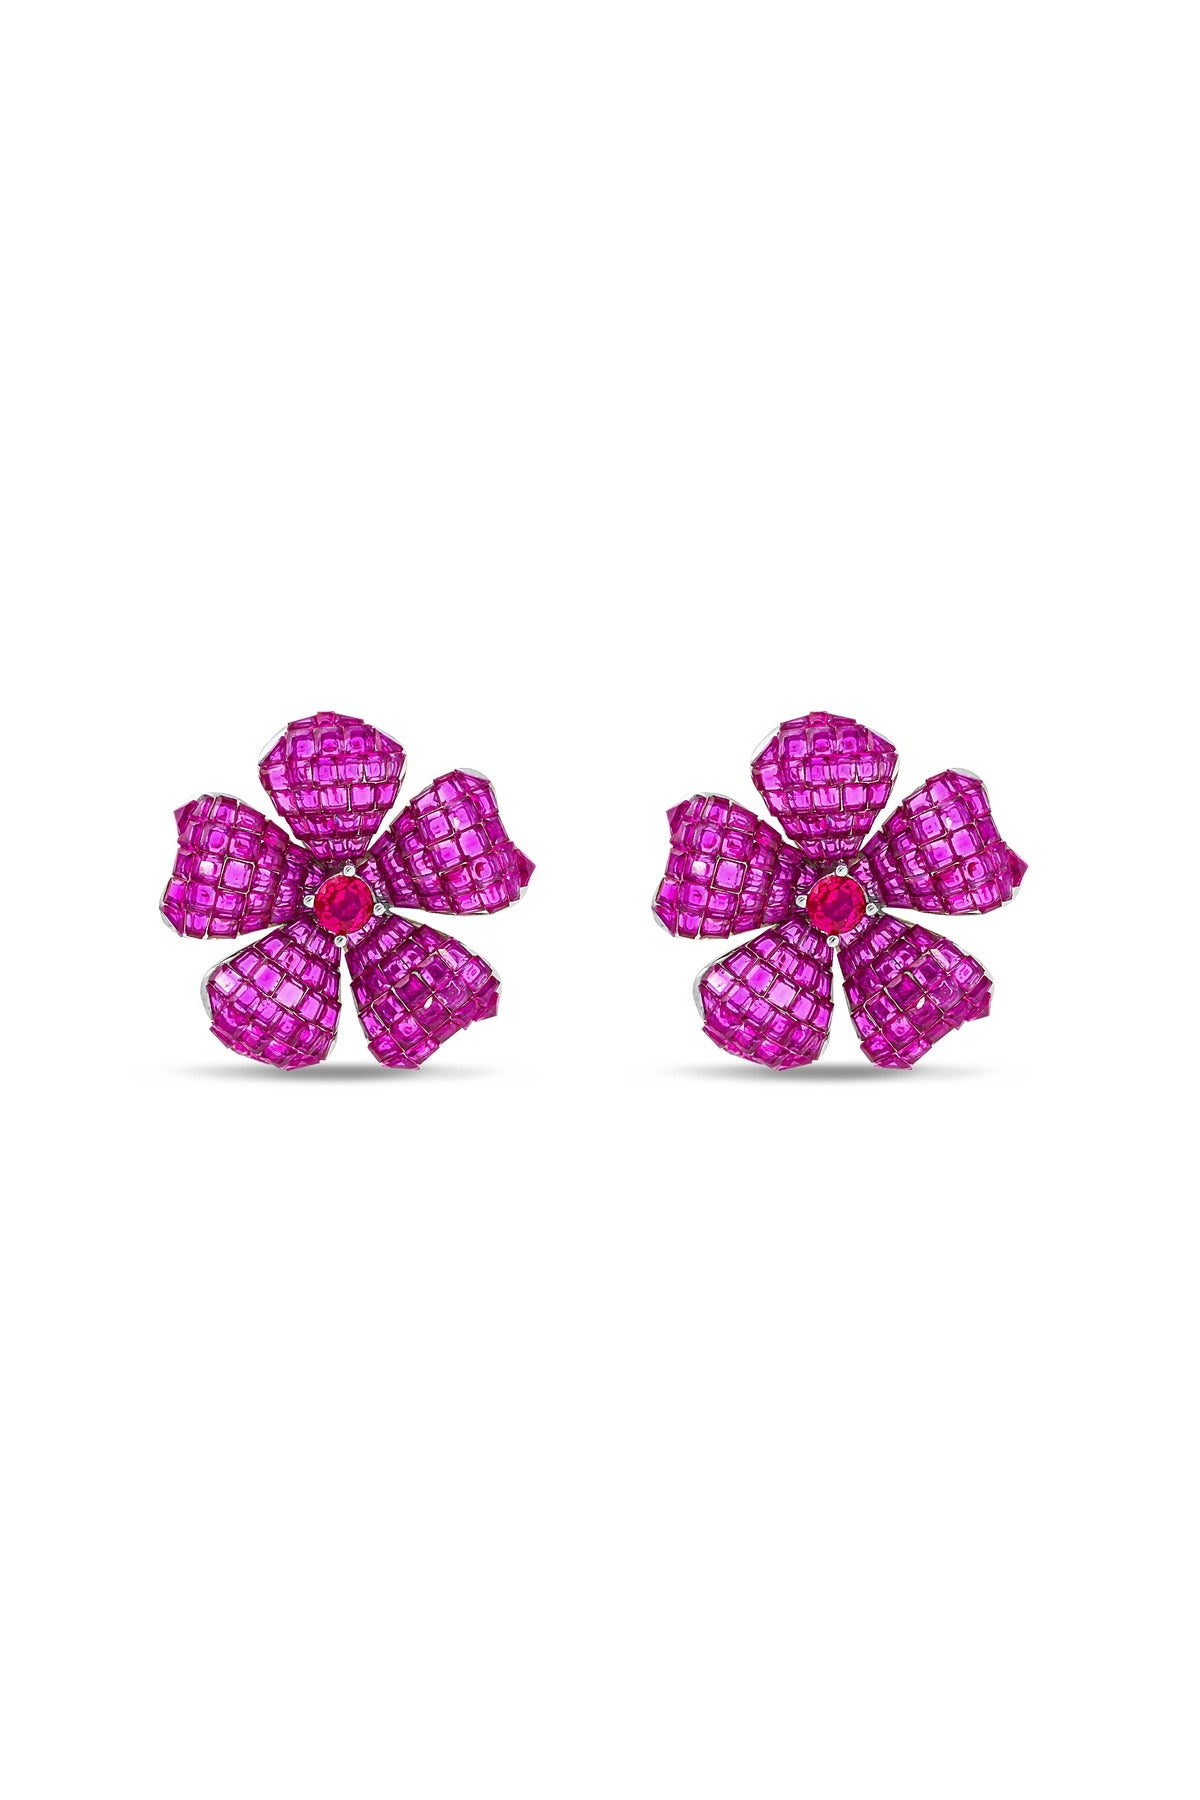 Floral Fantasia Ruby Stud Earrings